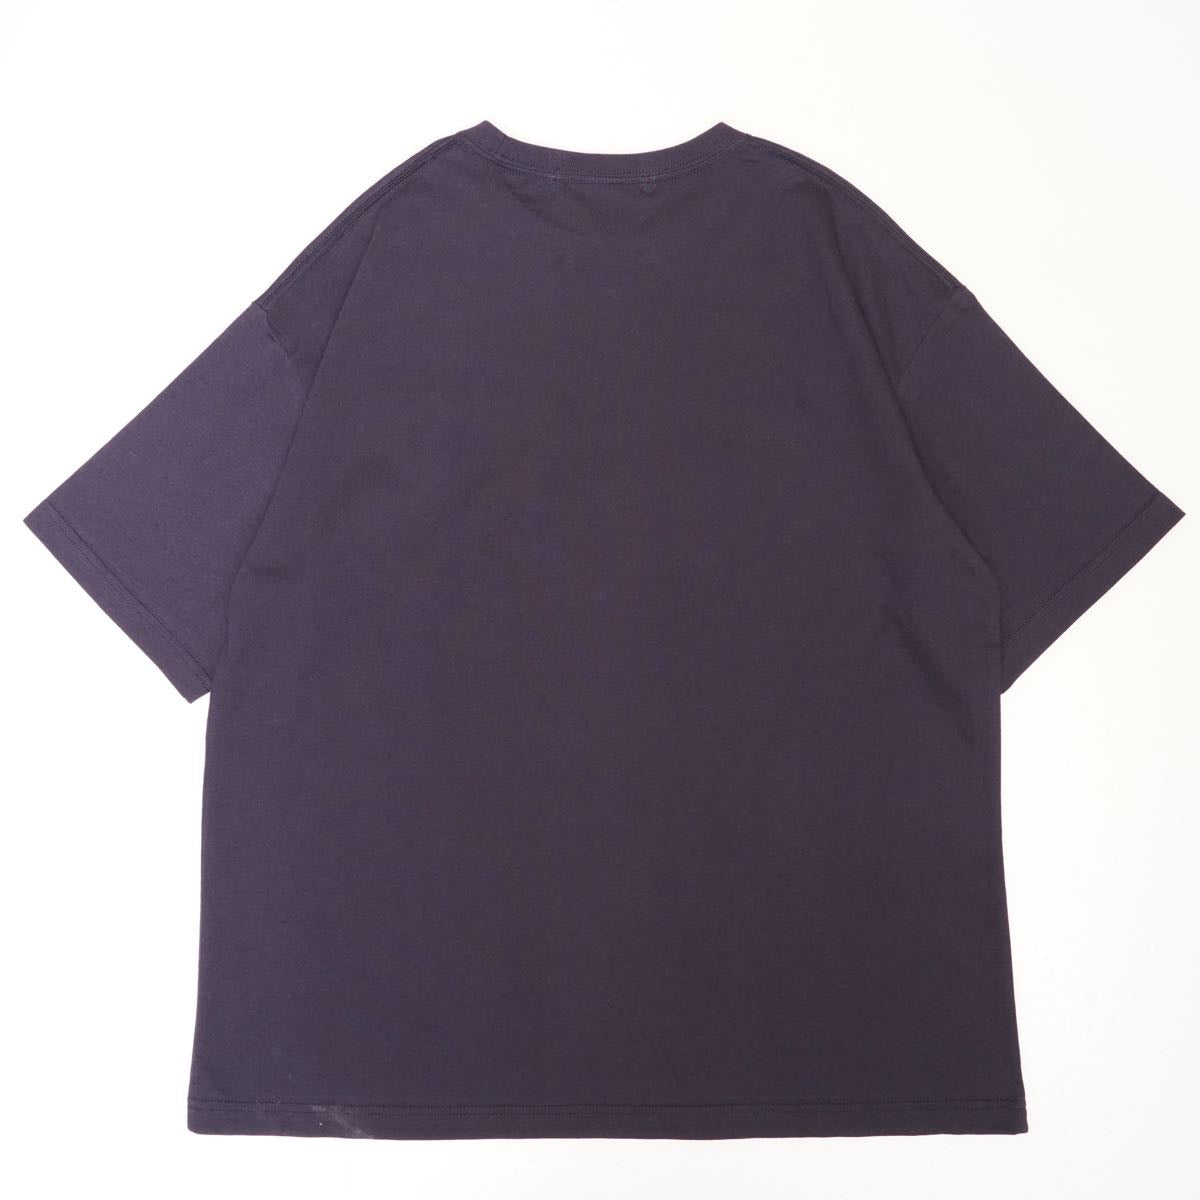 アドラーブル オリジナル ネイビー ビッグシルエット ロゴ Tシャツ ドロップショルダー ADOLUVLE ORIGINAL NAVY LOGO TEE DROP-SHOULDER LOOSE-FIT MADE IN JAPAN